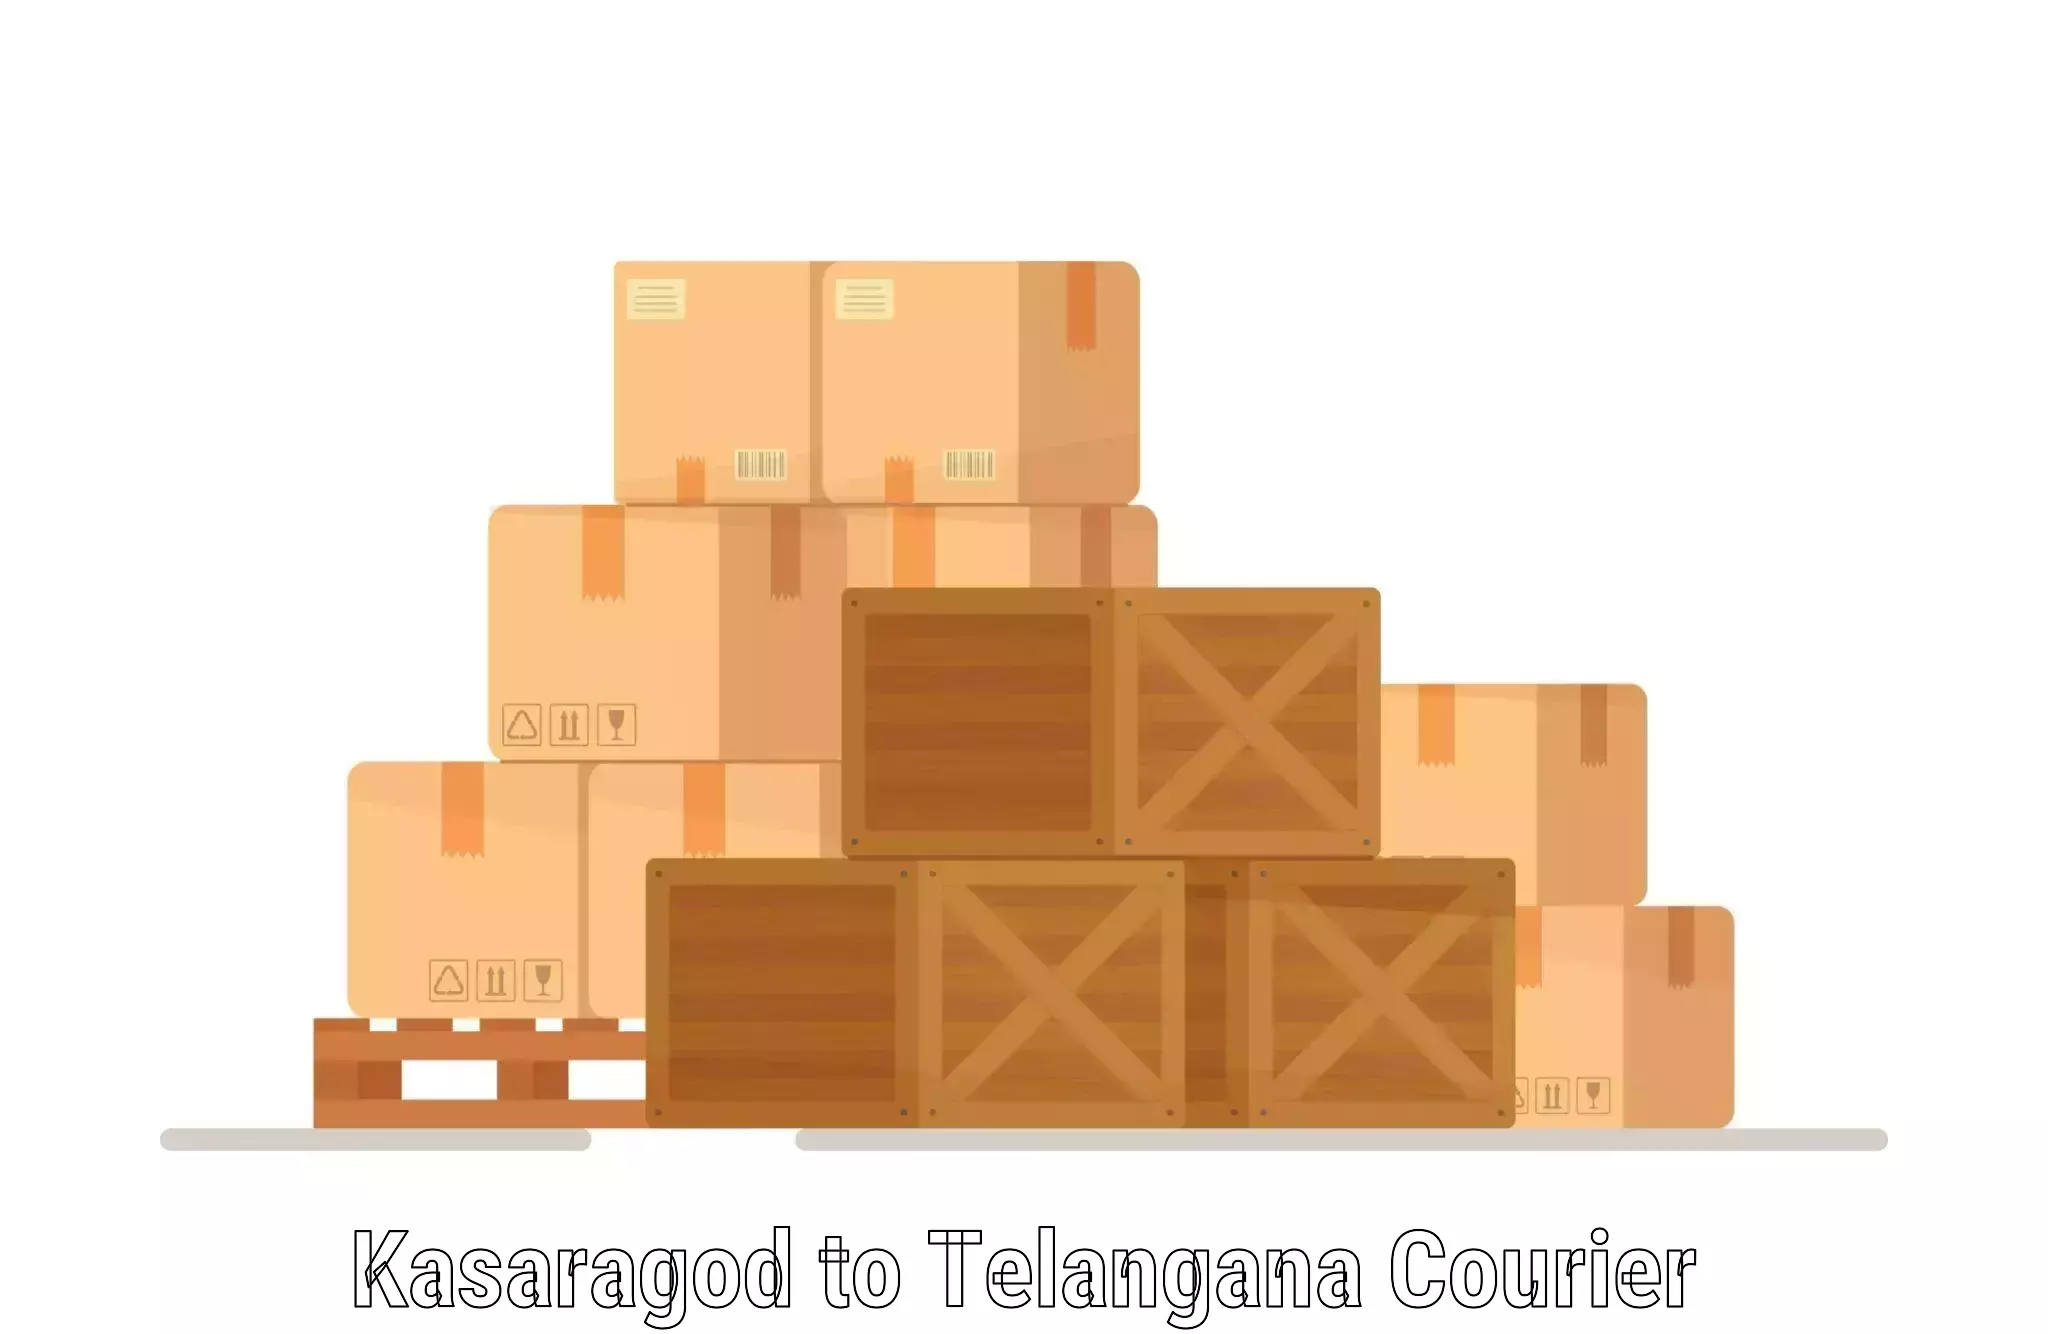 Nationwide delivery network Kasaragod to Makthal